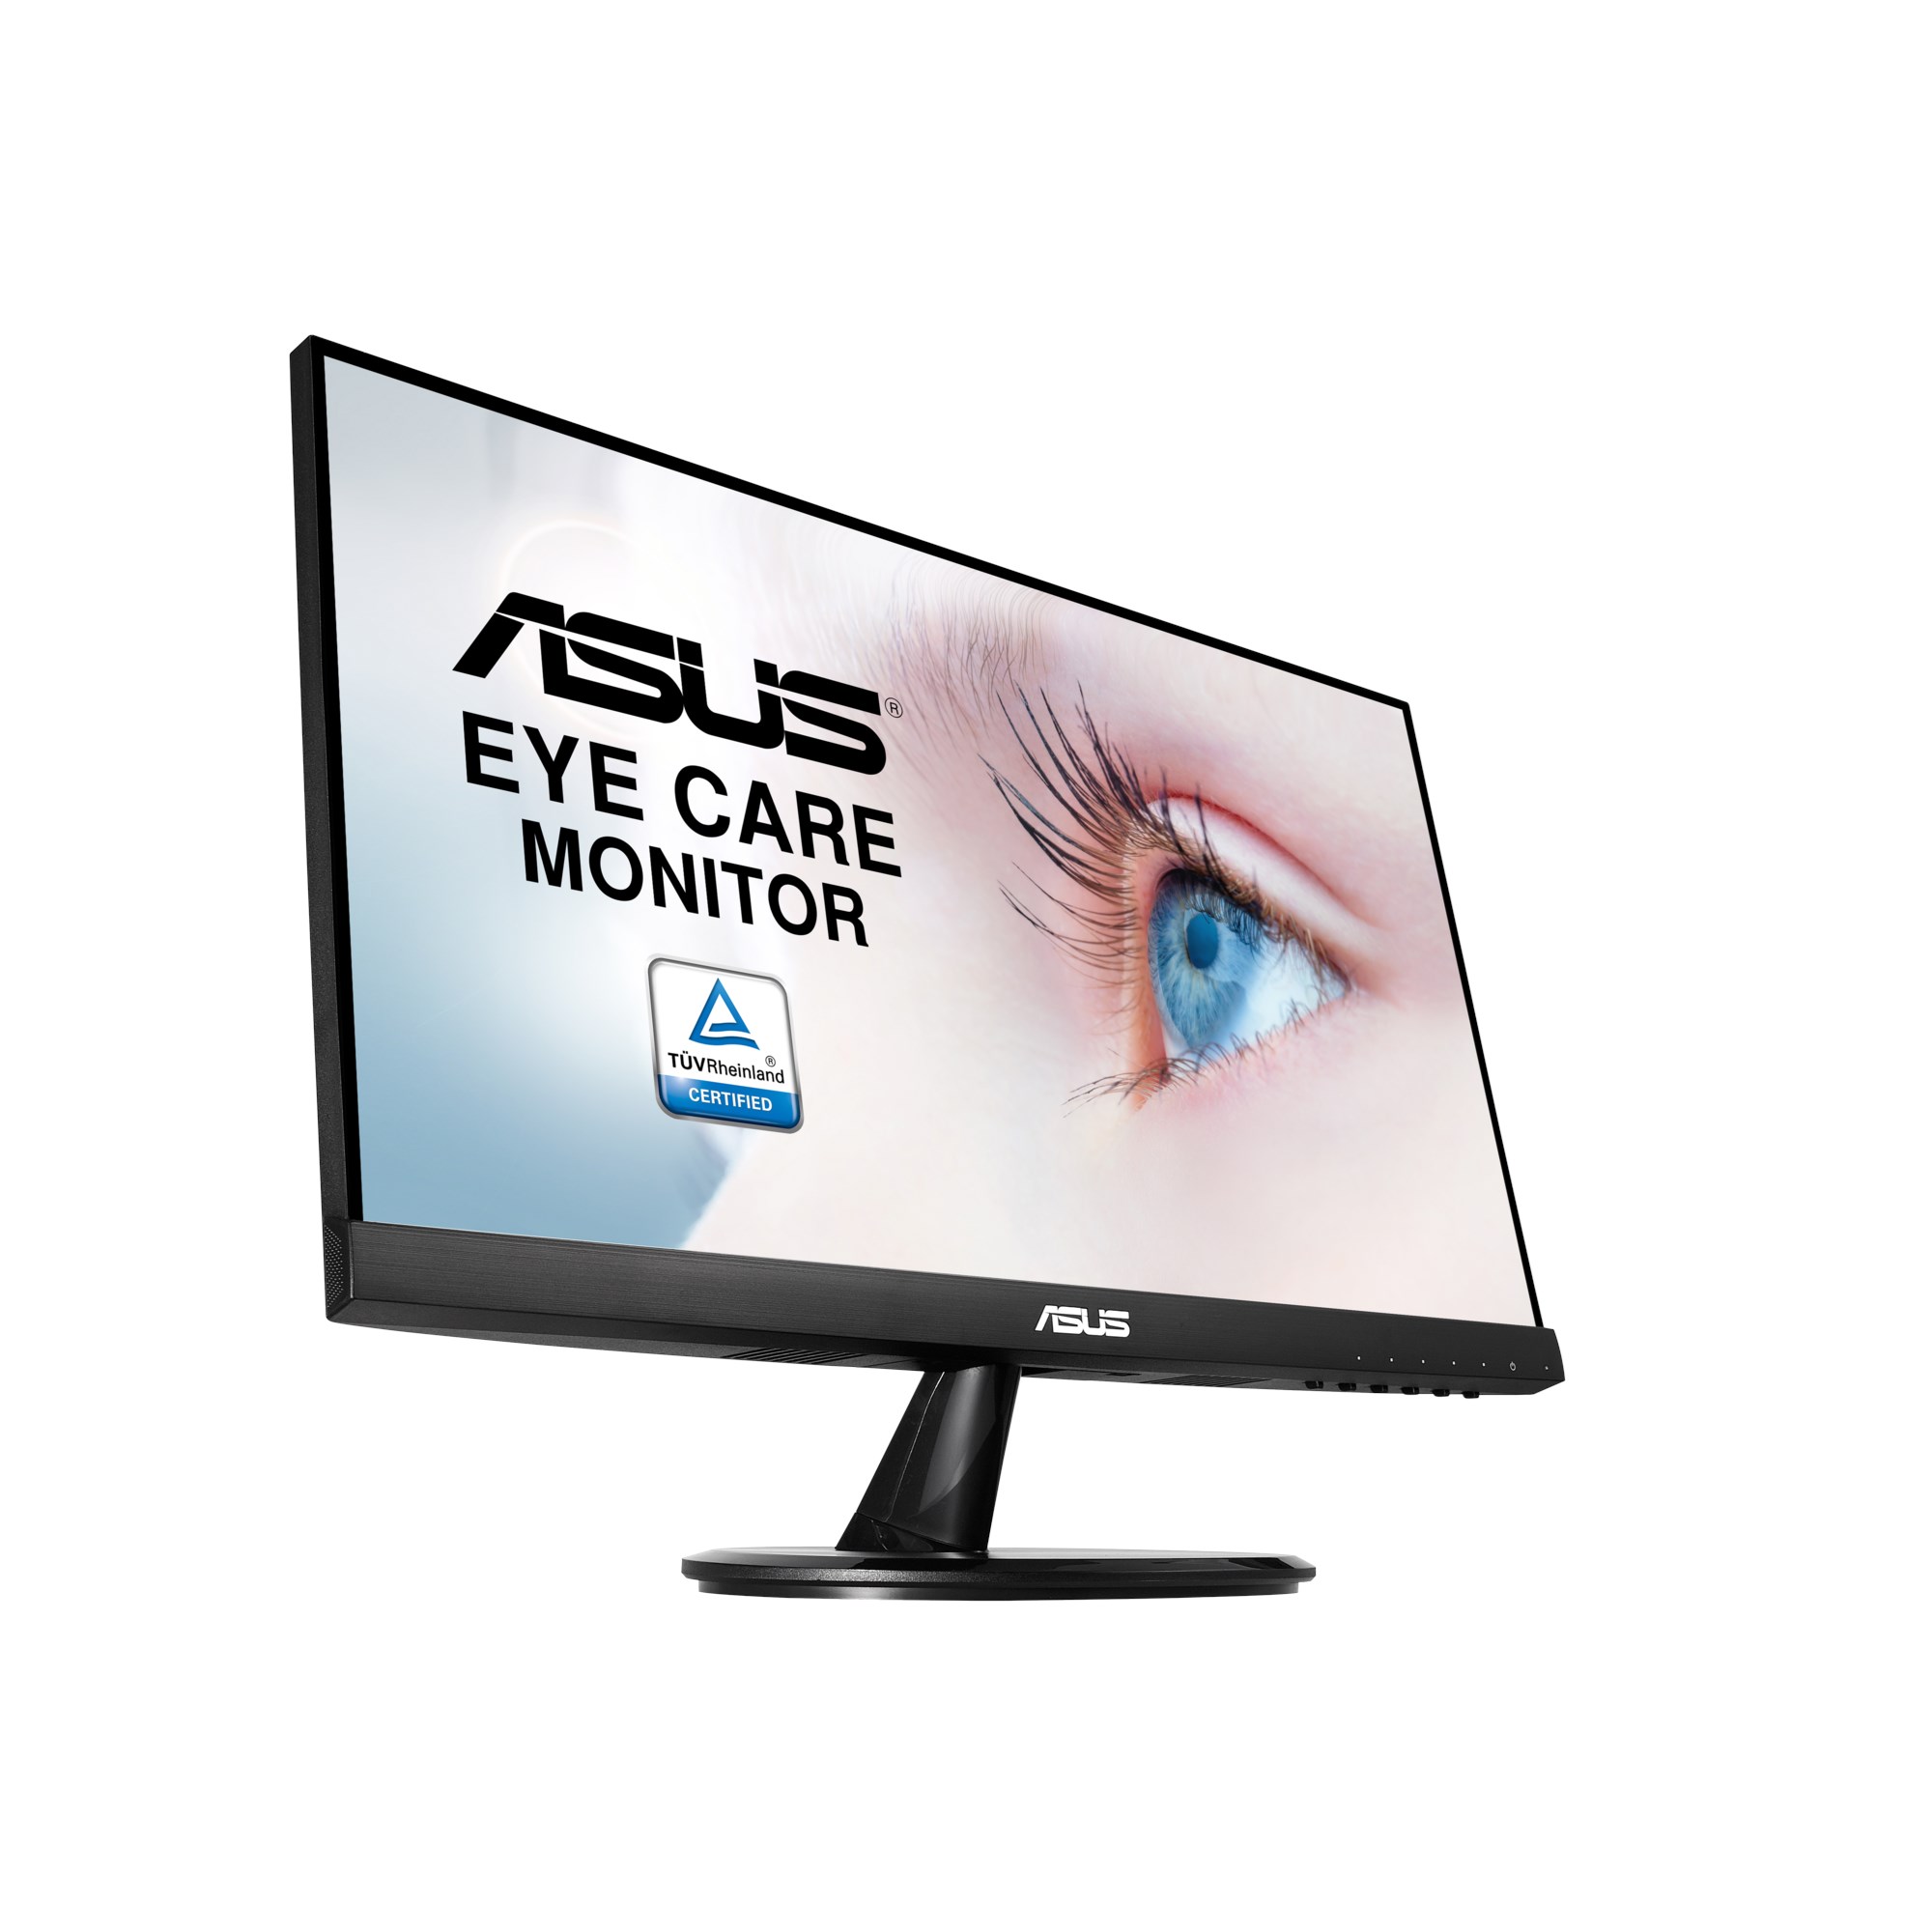 Asus Inch Monitor | brebdude.com